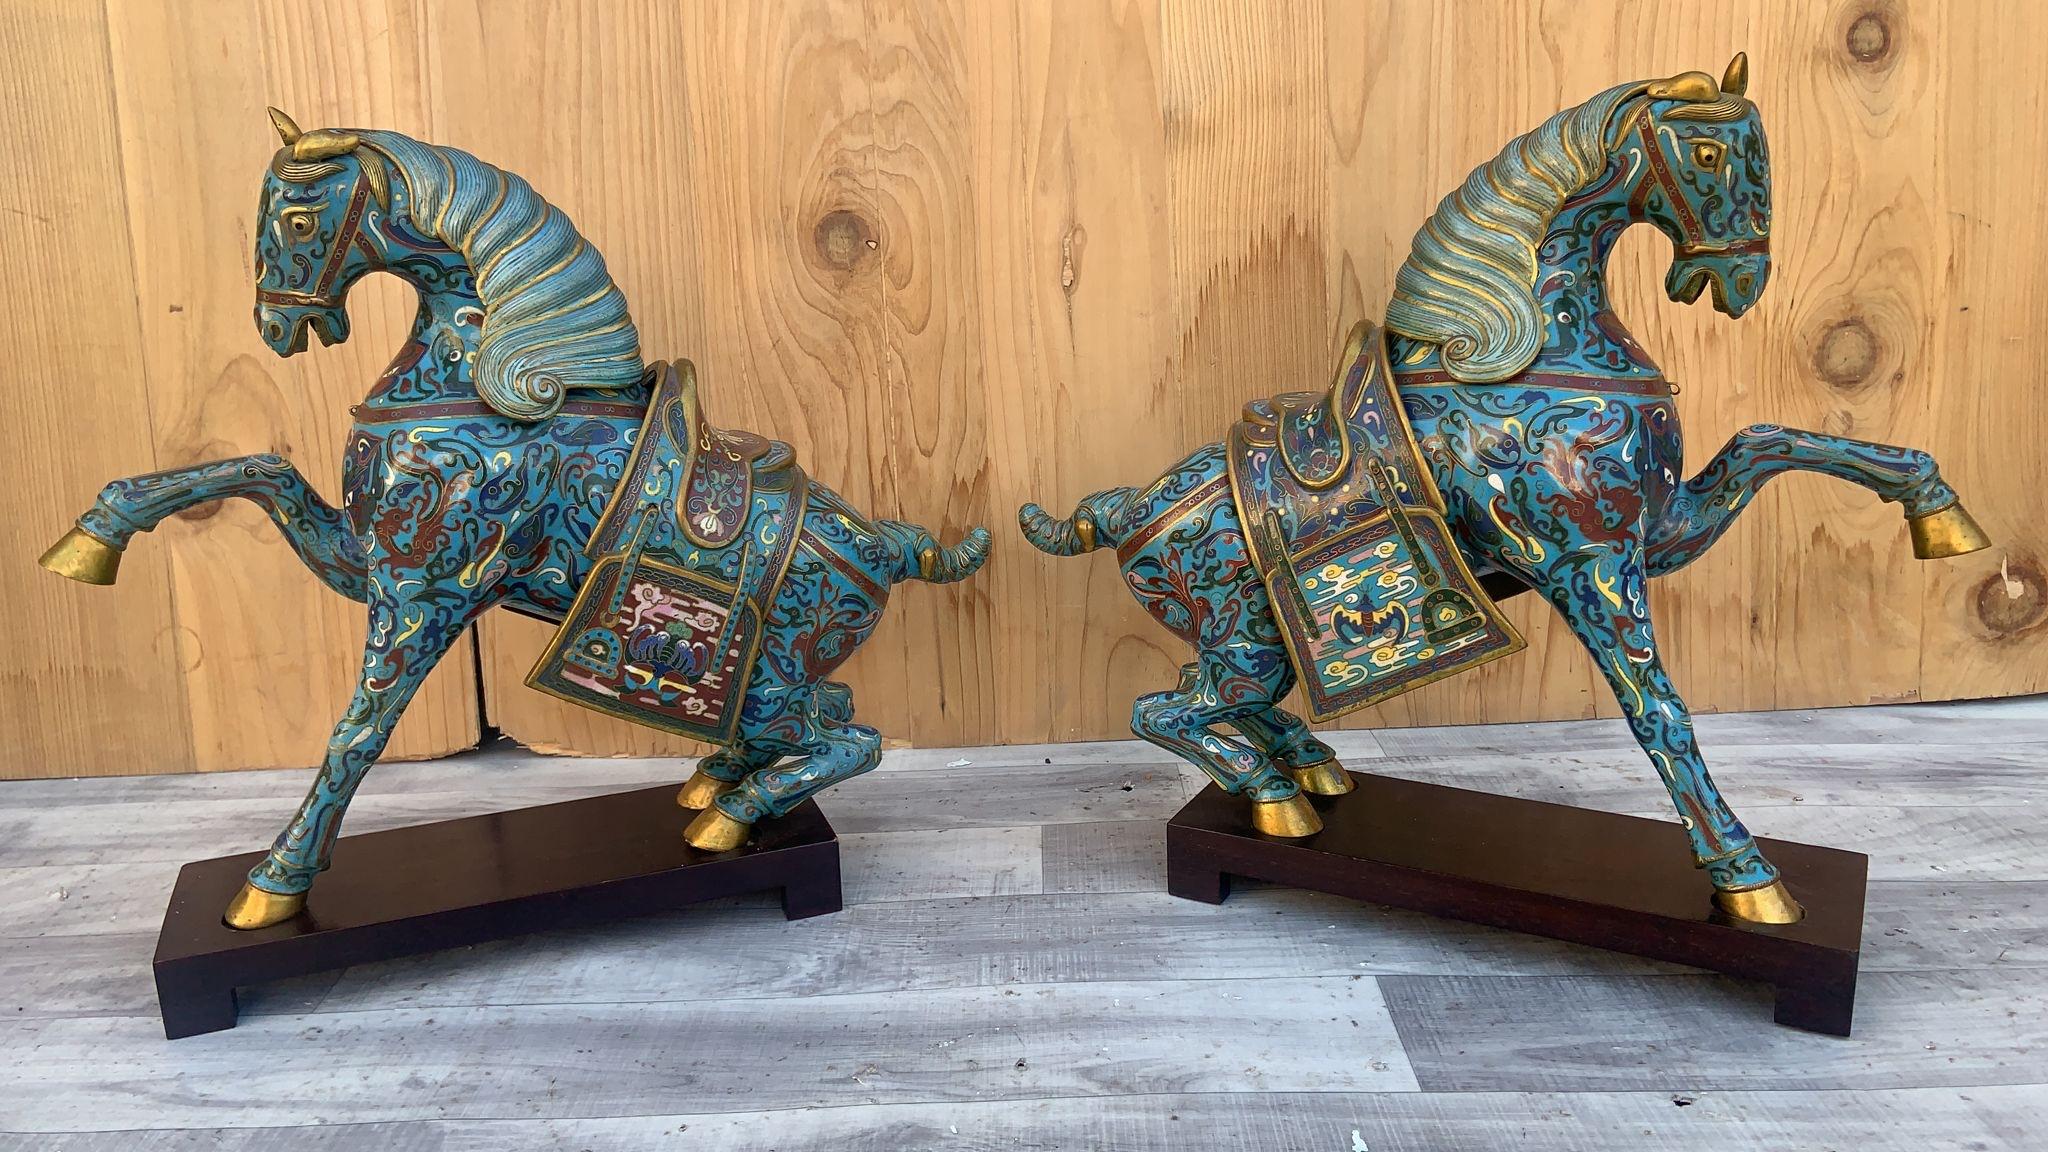 Vintage Chinese Cloisonné War Horse Skulpturen auf Mahagoni Basis - Paar 

Exquisiter Satz von 2 chinesischen Cloisonne'-Kriegspferdeskulpturen auf Mahagonisockeln. Jede Pferdeskulptur ist von beträchtlicher Größe in der Haltung des Kriegspferdes